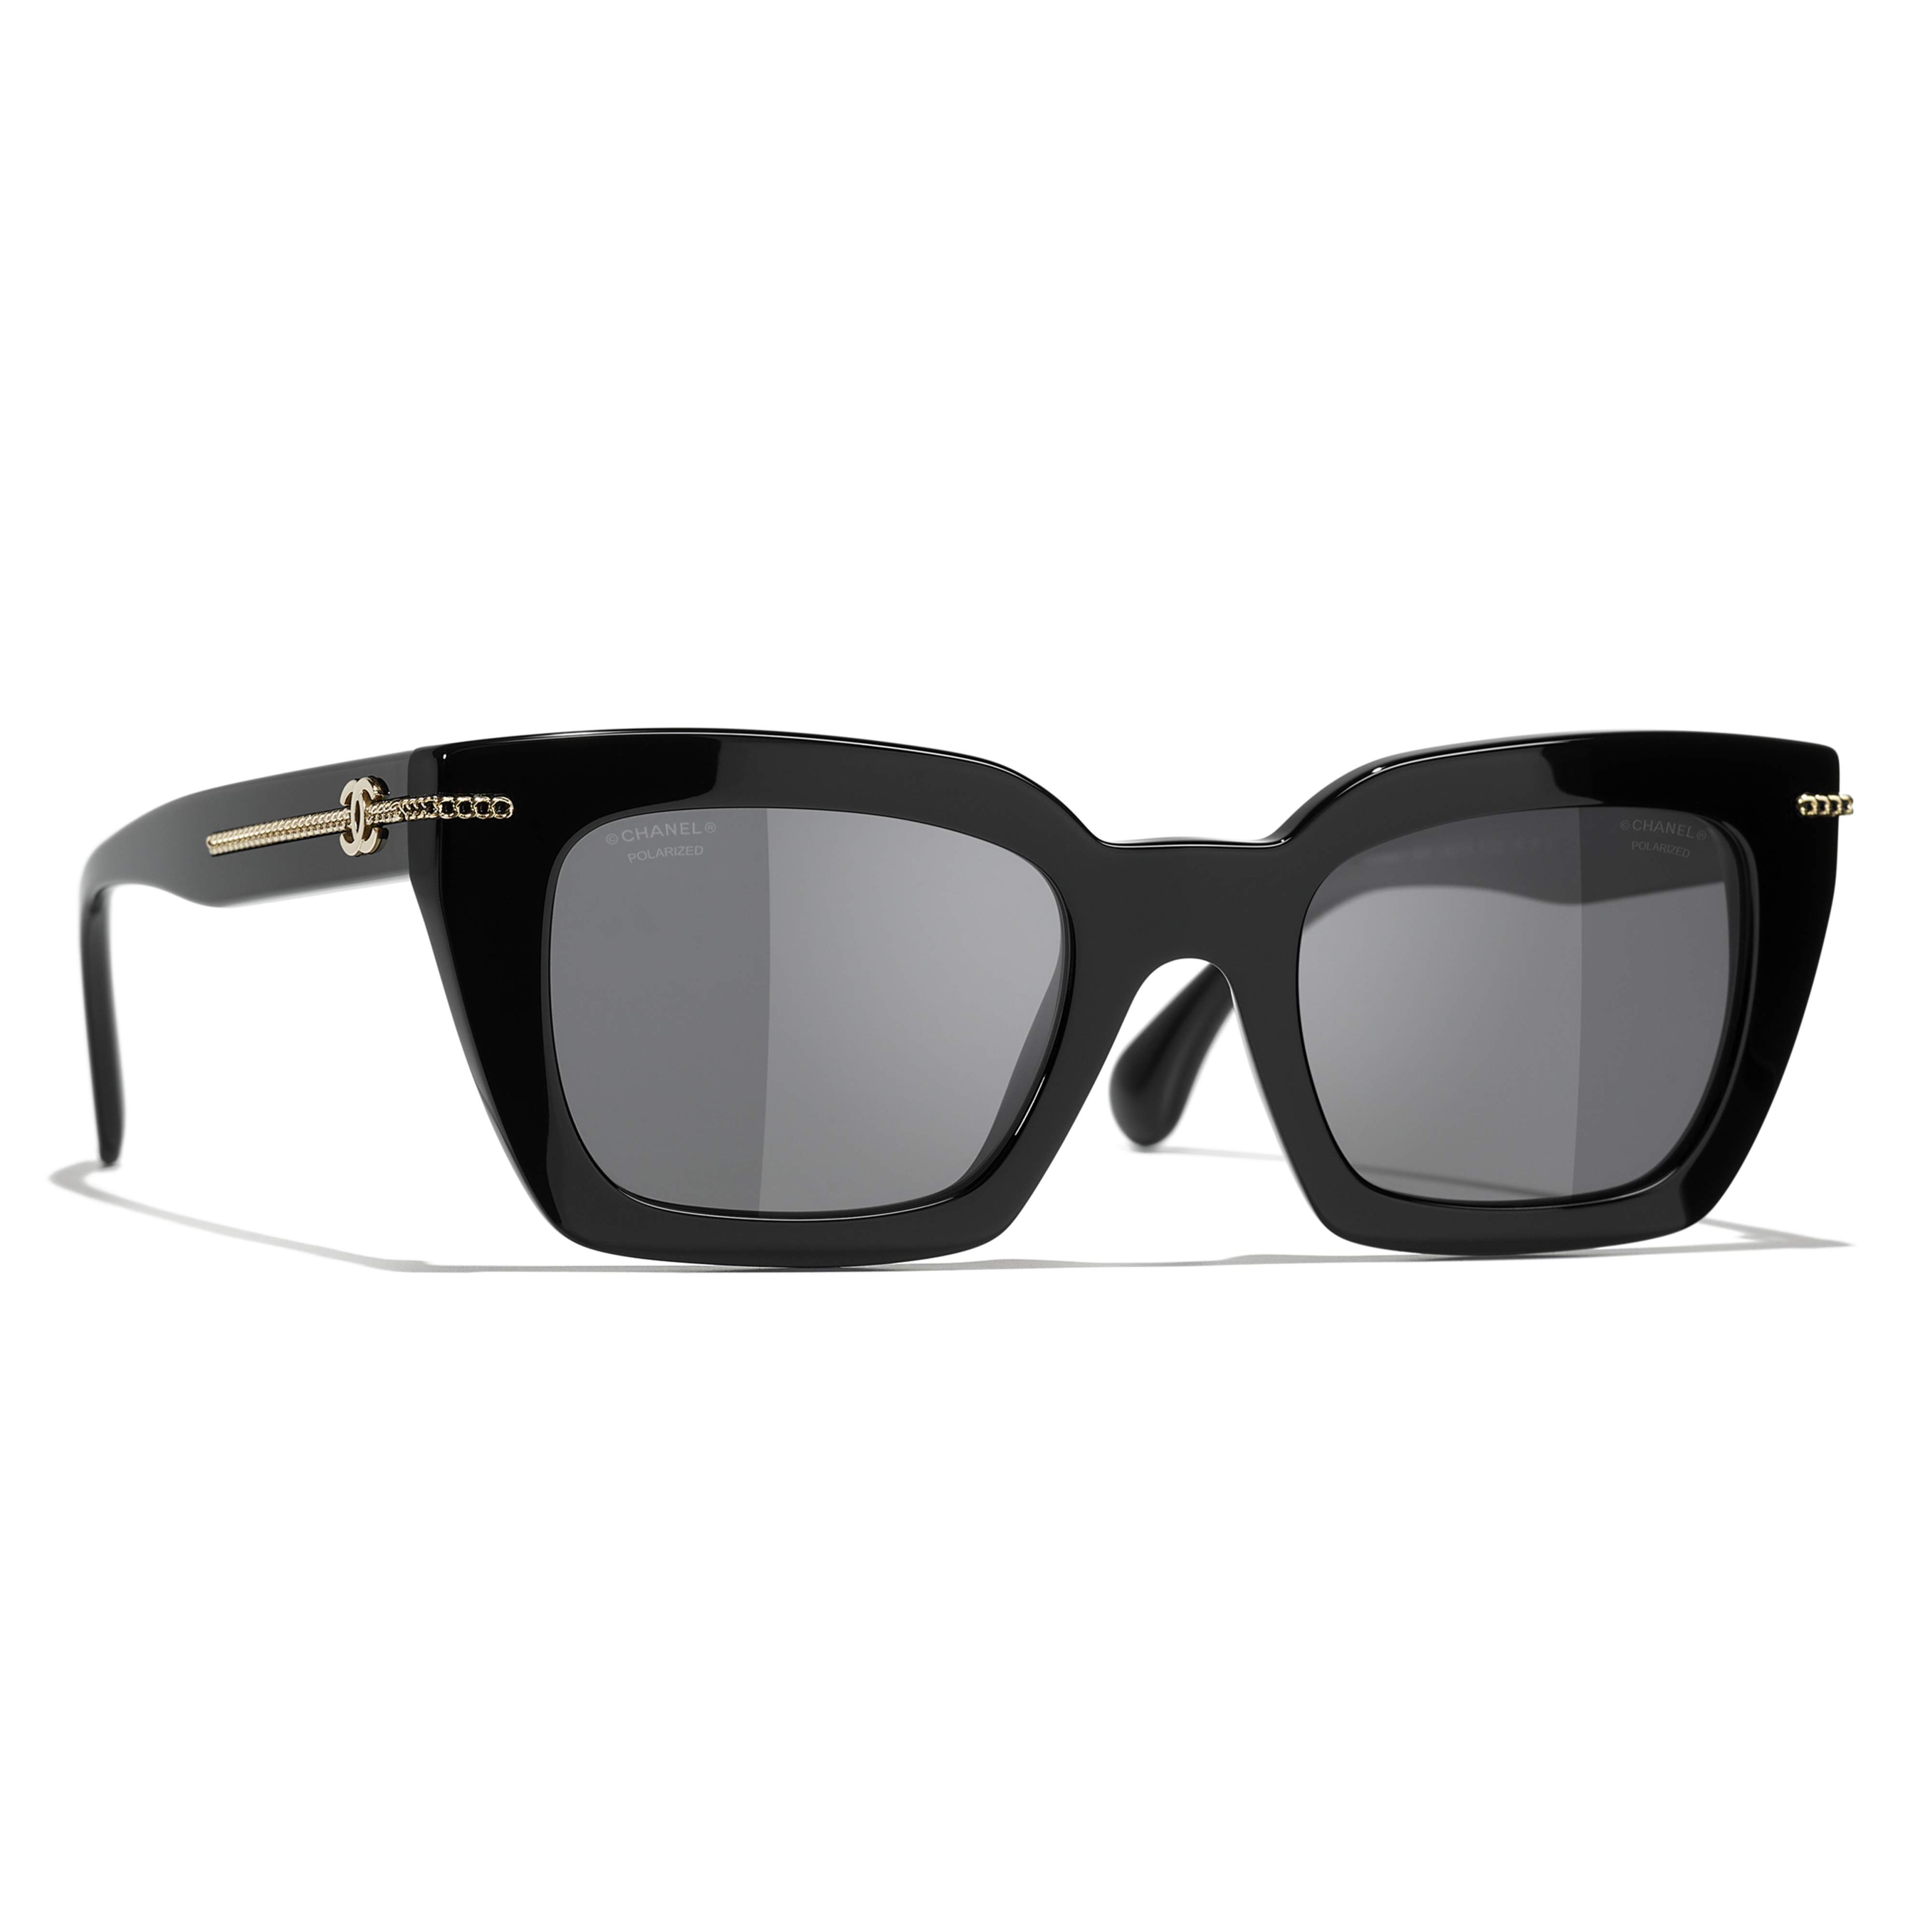 Sunglasses CHANEL CH5509 C622/T8 51-22 Black in stock | Price 275 